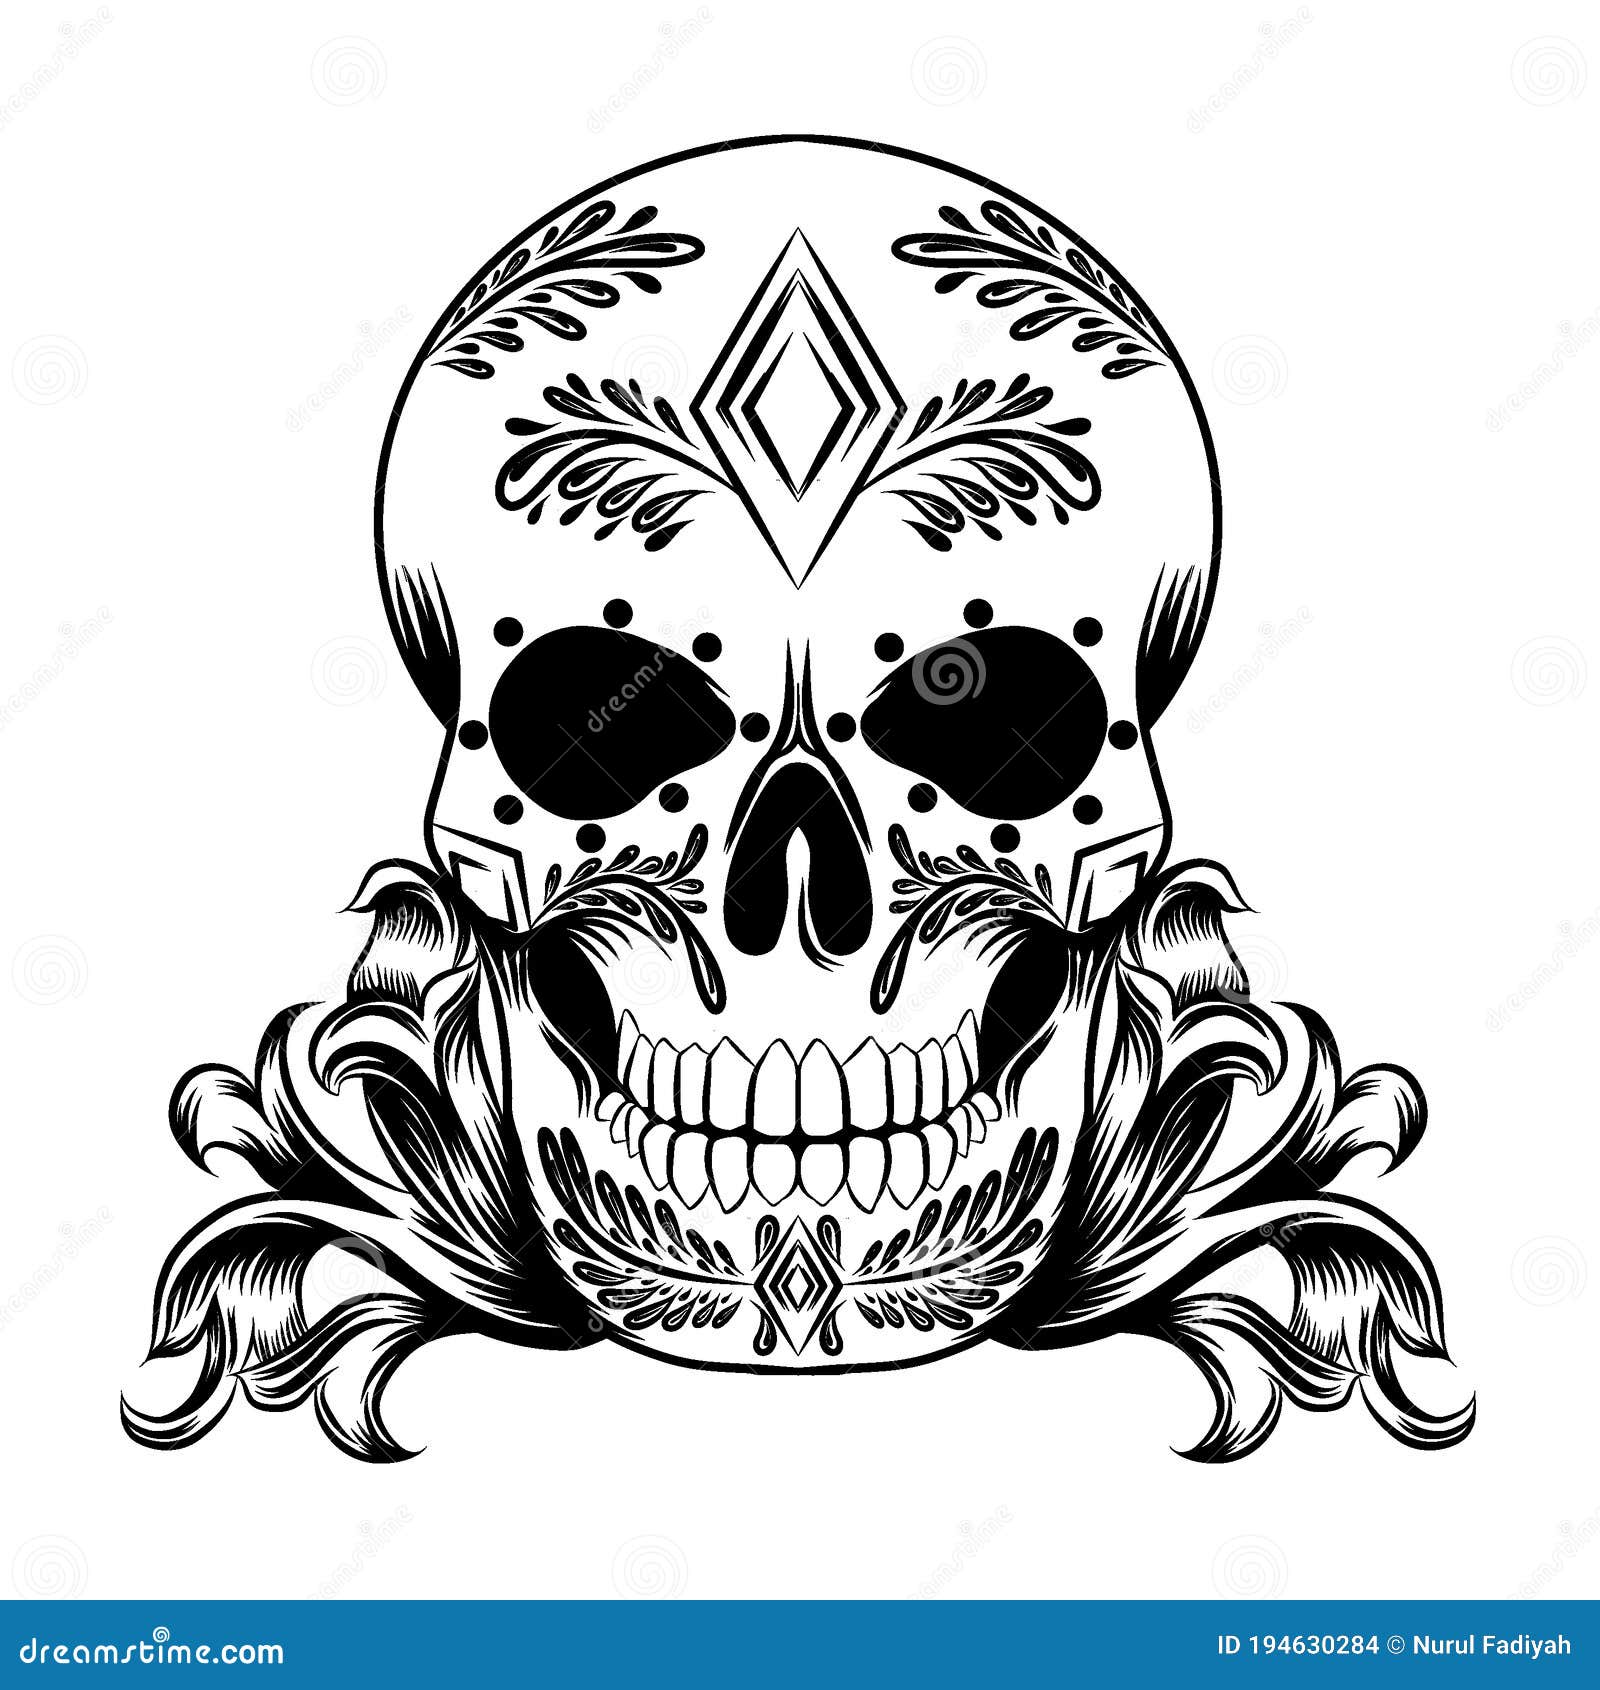 Crystal skull tattoo design  Easy skull drawings Cool skull drawings  Tattoo outline drawing